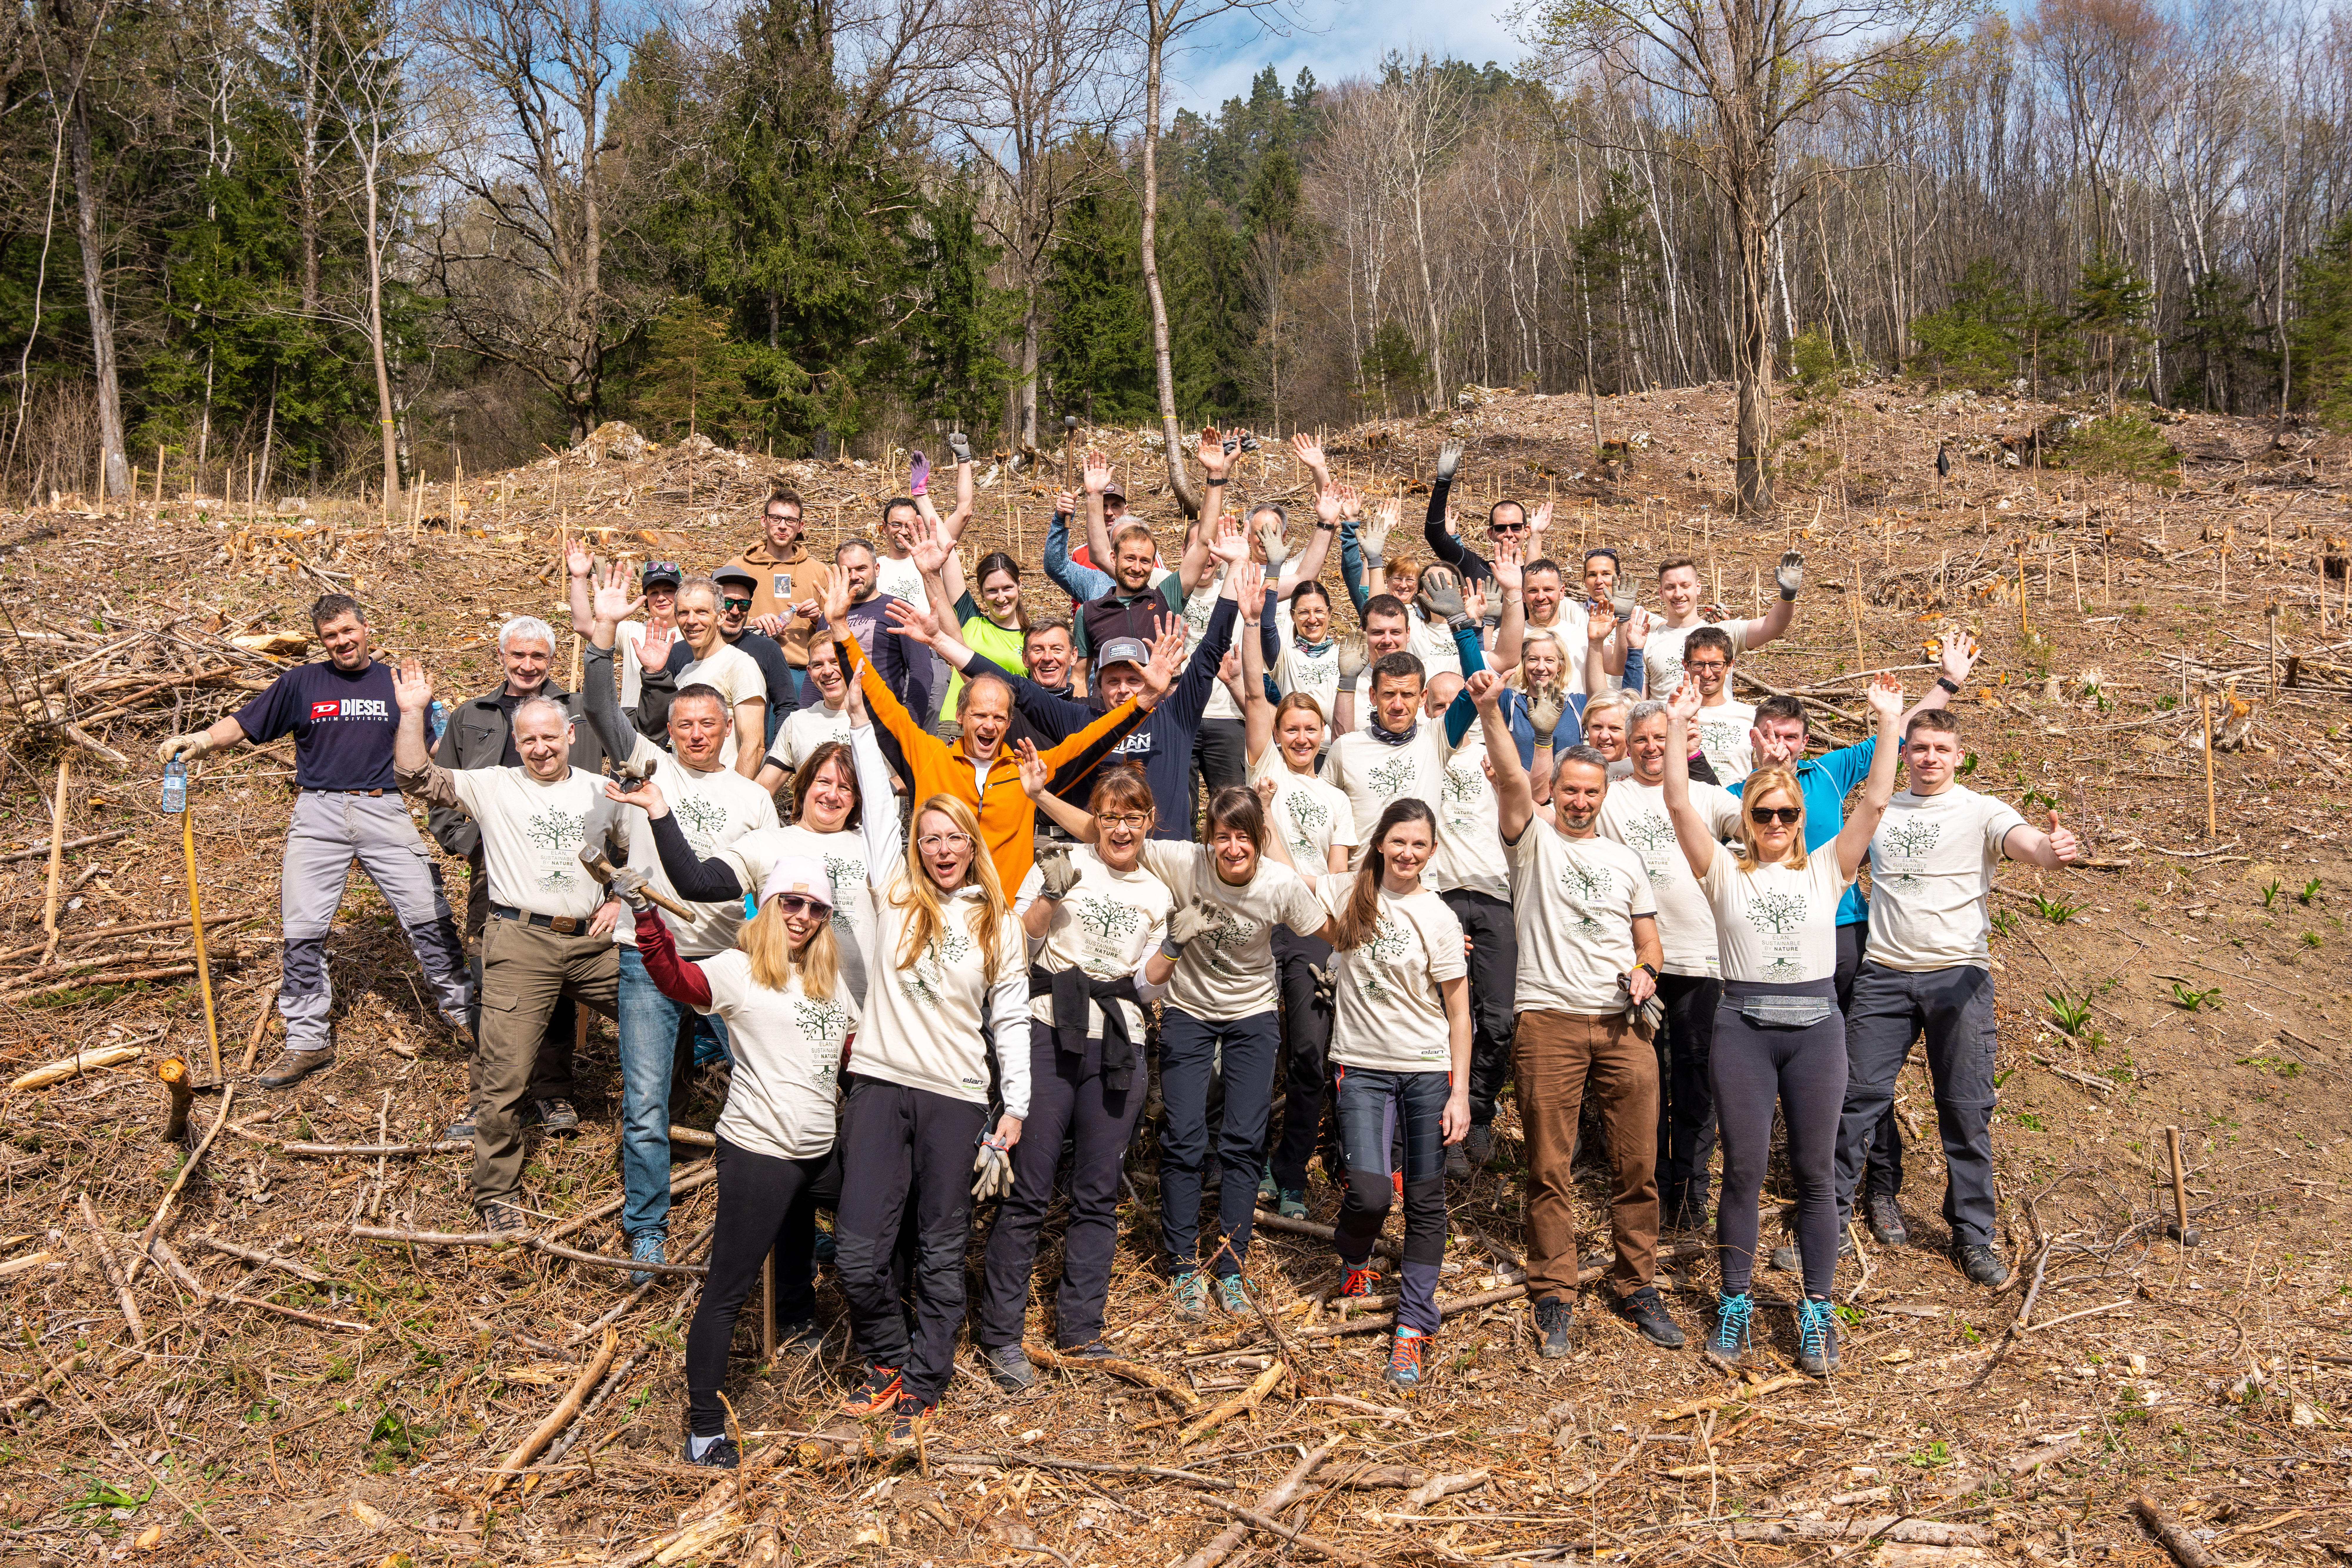 Elan employees planted 1000 trees